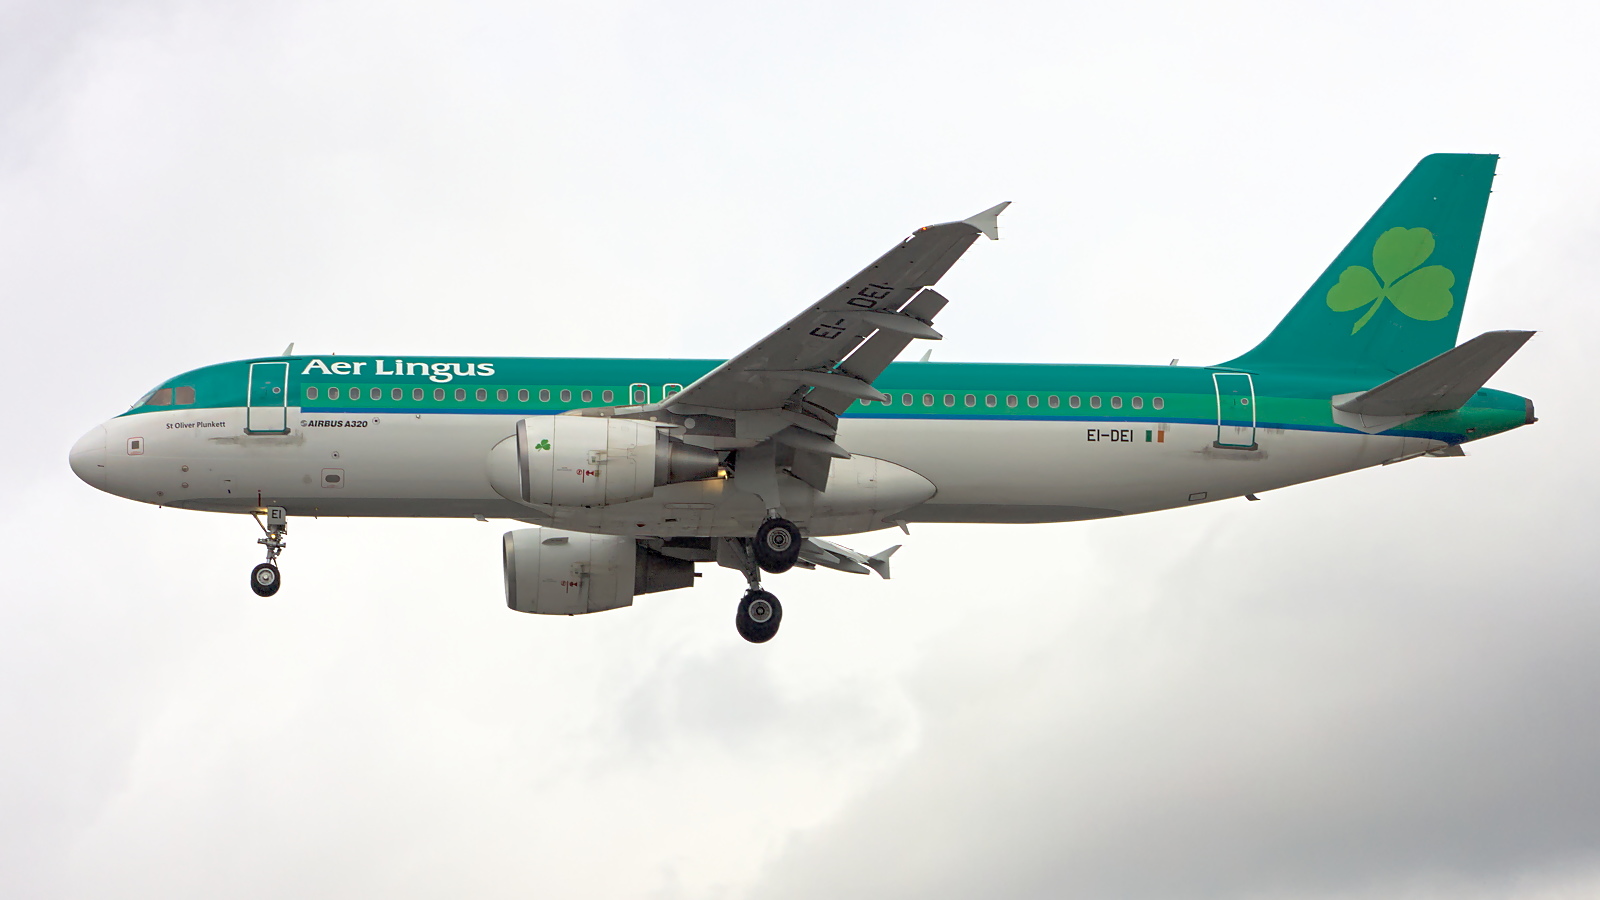 EI-DEI ✈ Aer Lingus Airbus A320-214 @ London-Heathrow